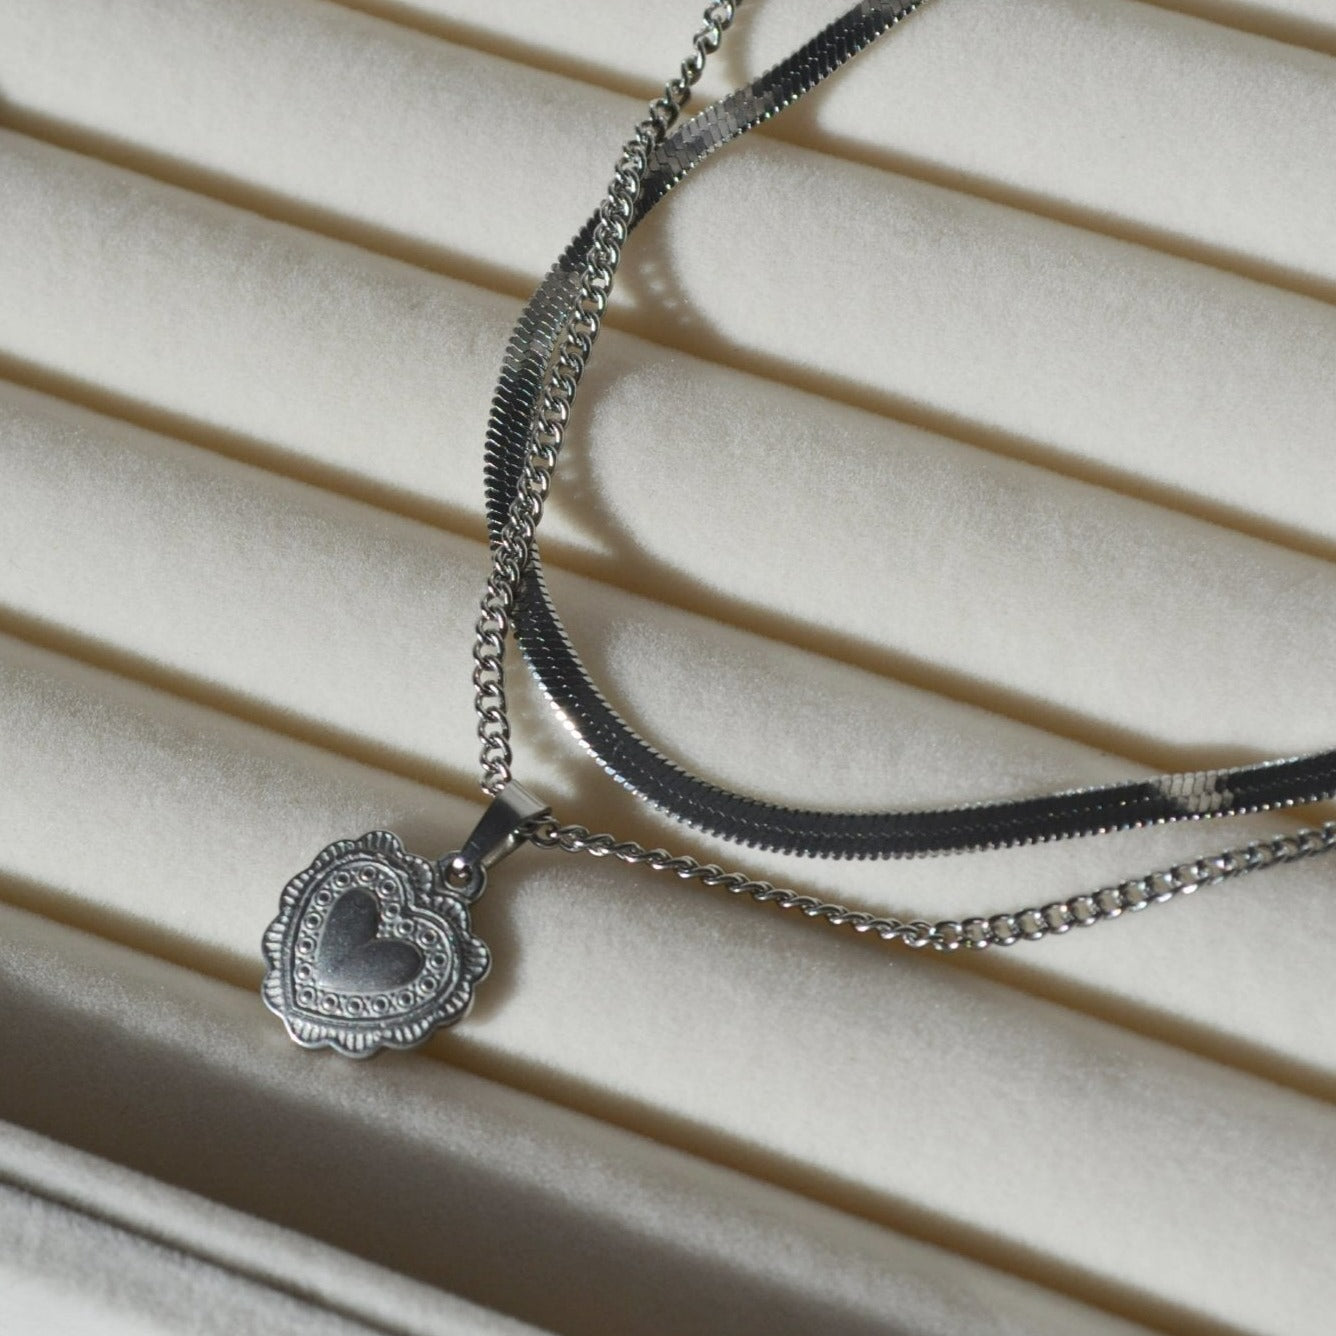 Dainty Gold Heart Lock Pendant Necklace For Women - Boutique Wear RENN